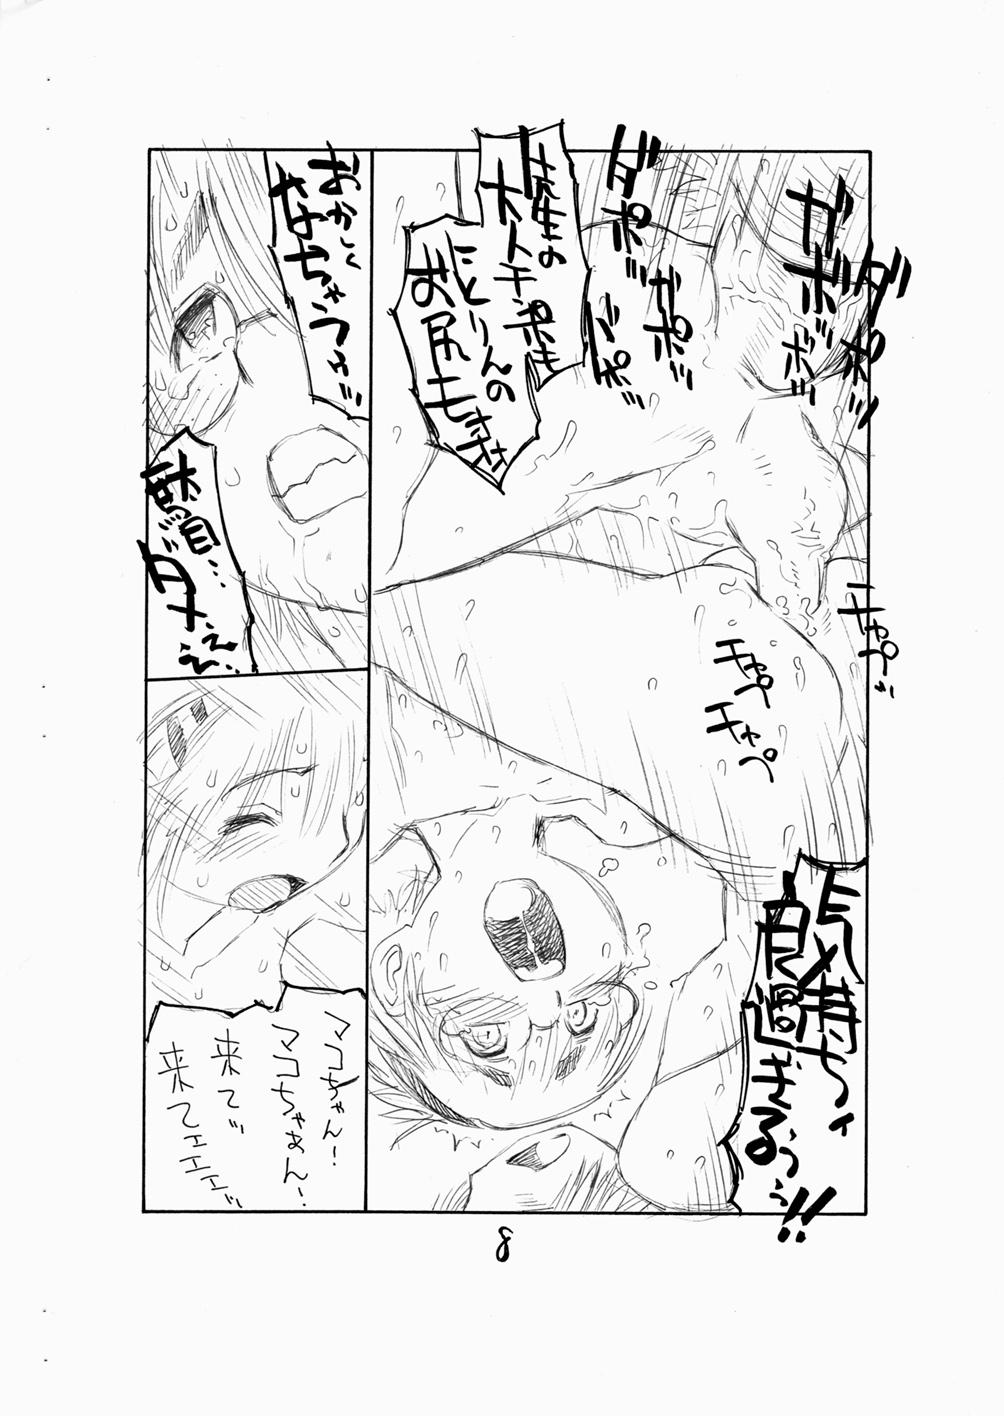 Asses Bokutachi Otokonoko 3 - Hourou musuko Big Dildo - Page 10